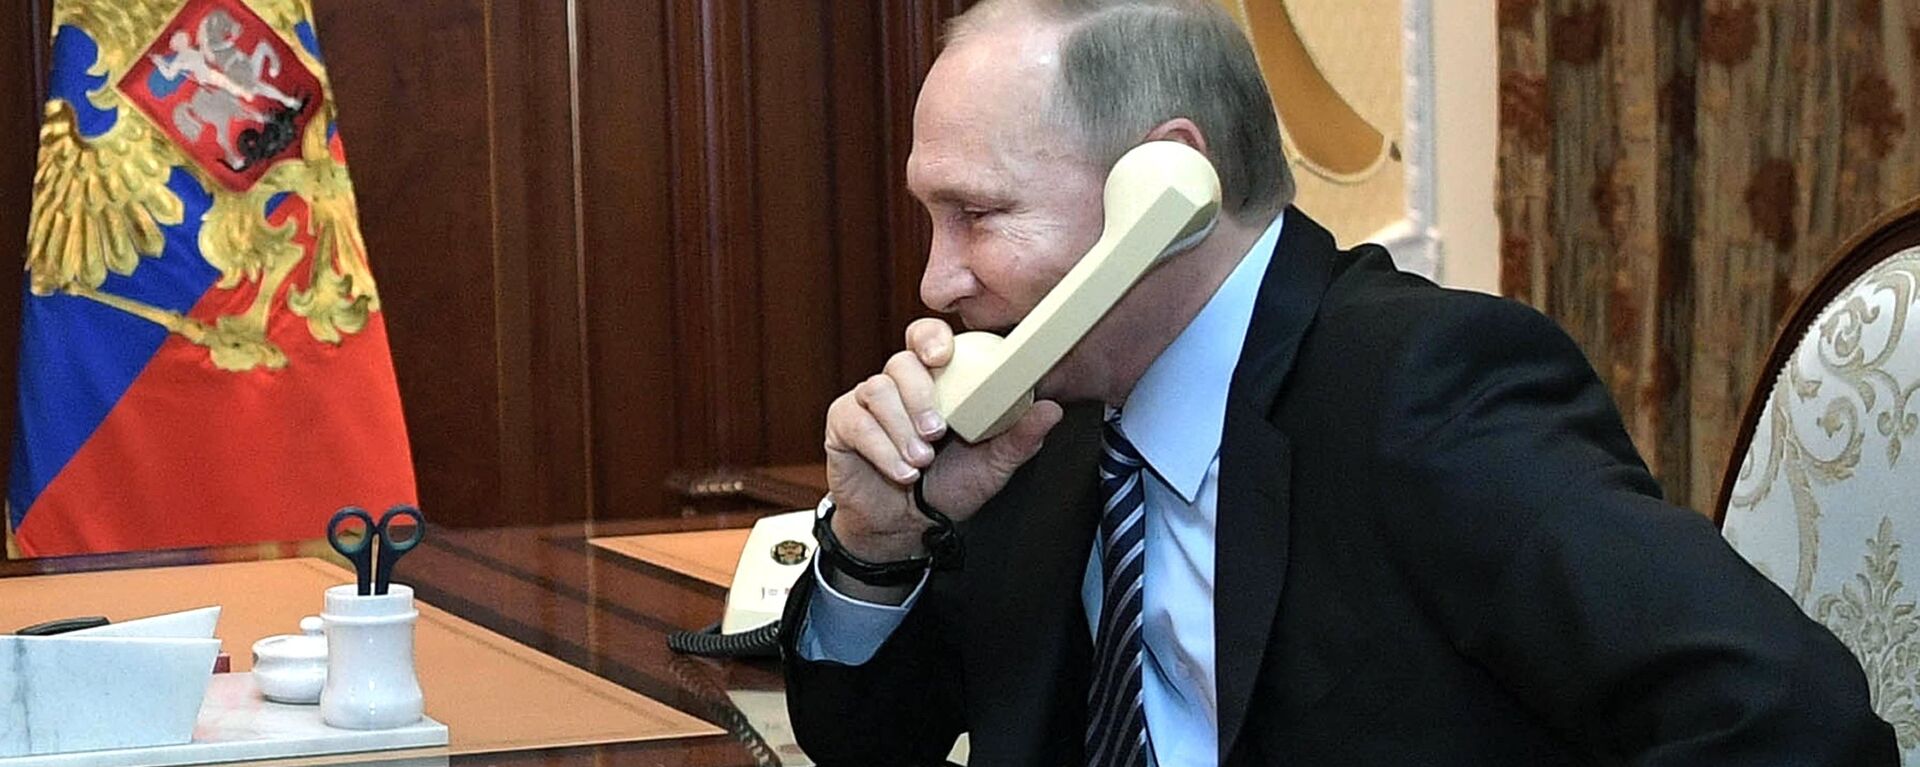 Vladímir Putin, presidente de Rusia, habla por teléfono (archivo) - Sputnik Mundo, 1920, 02.02.2021